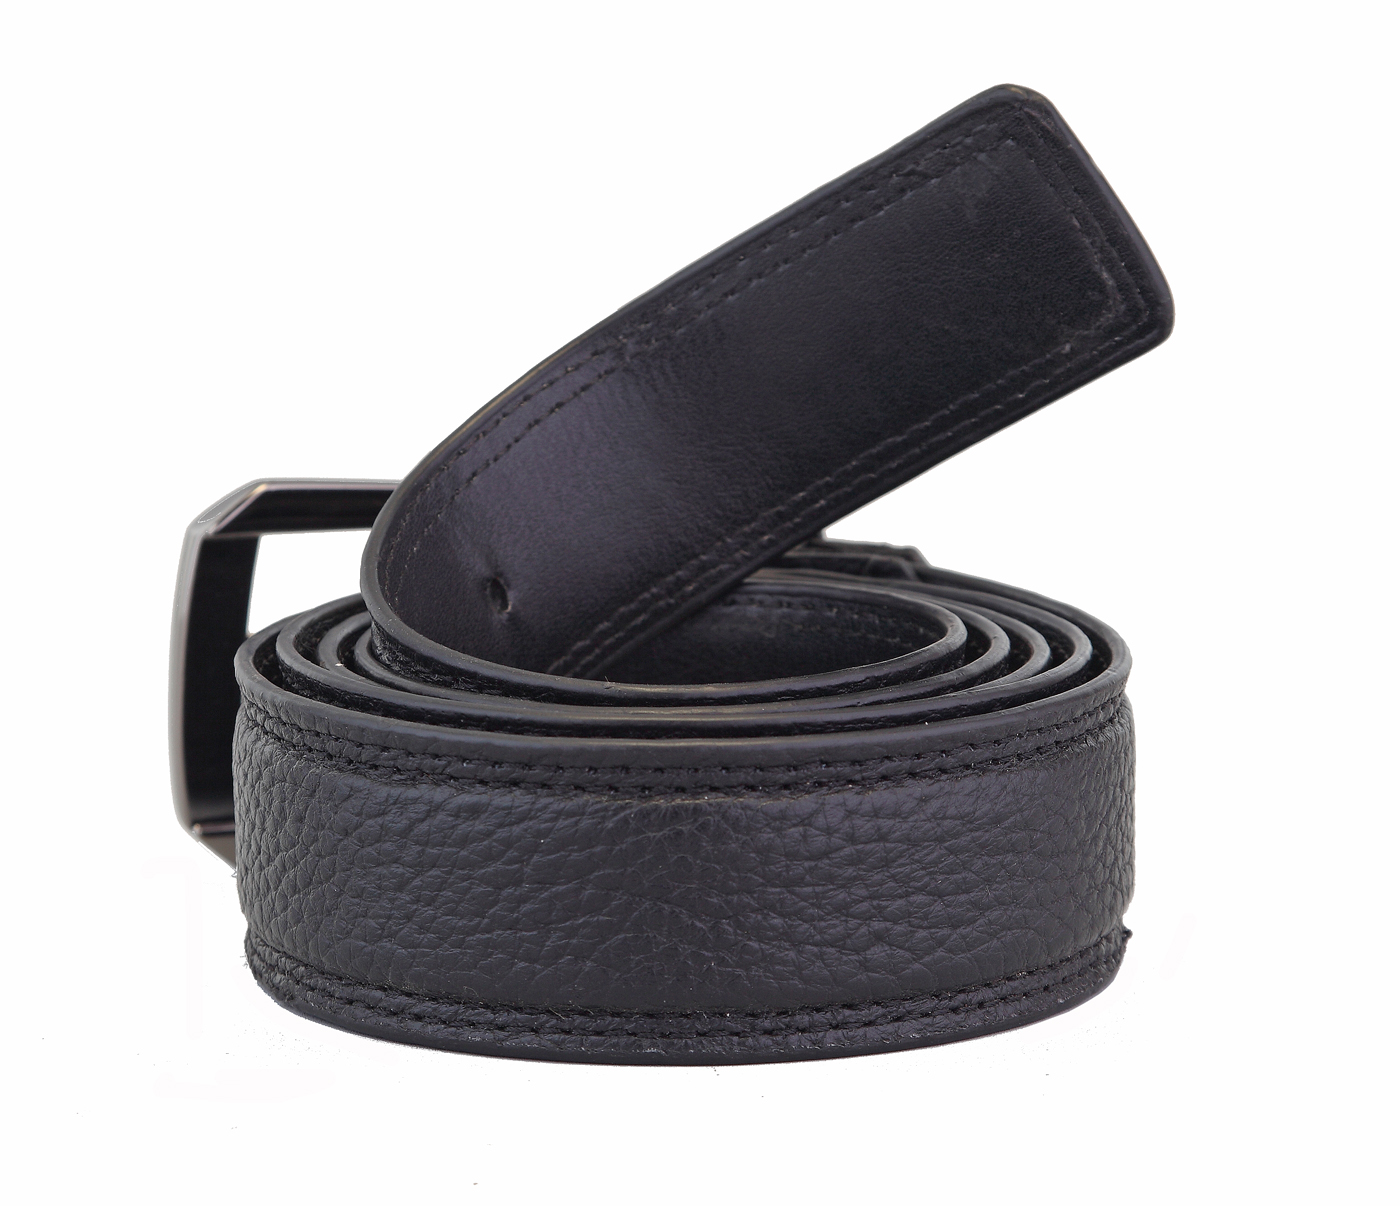  Leather Belt(Black)BL11